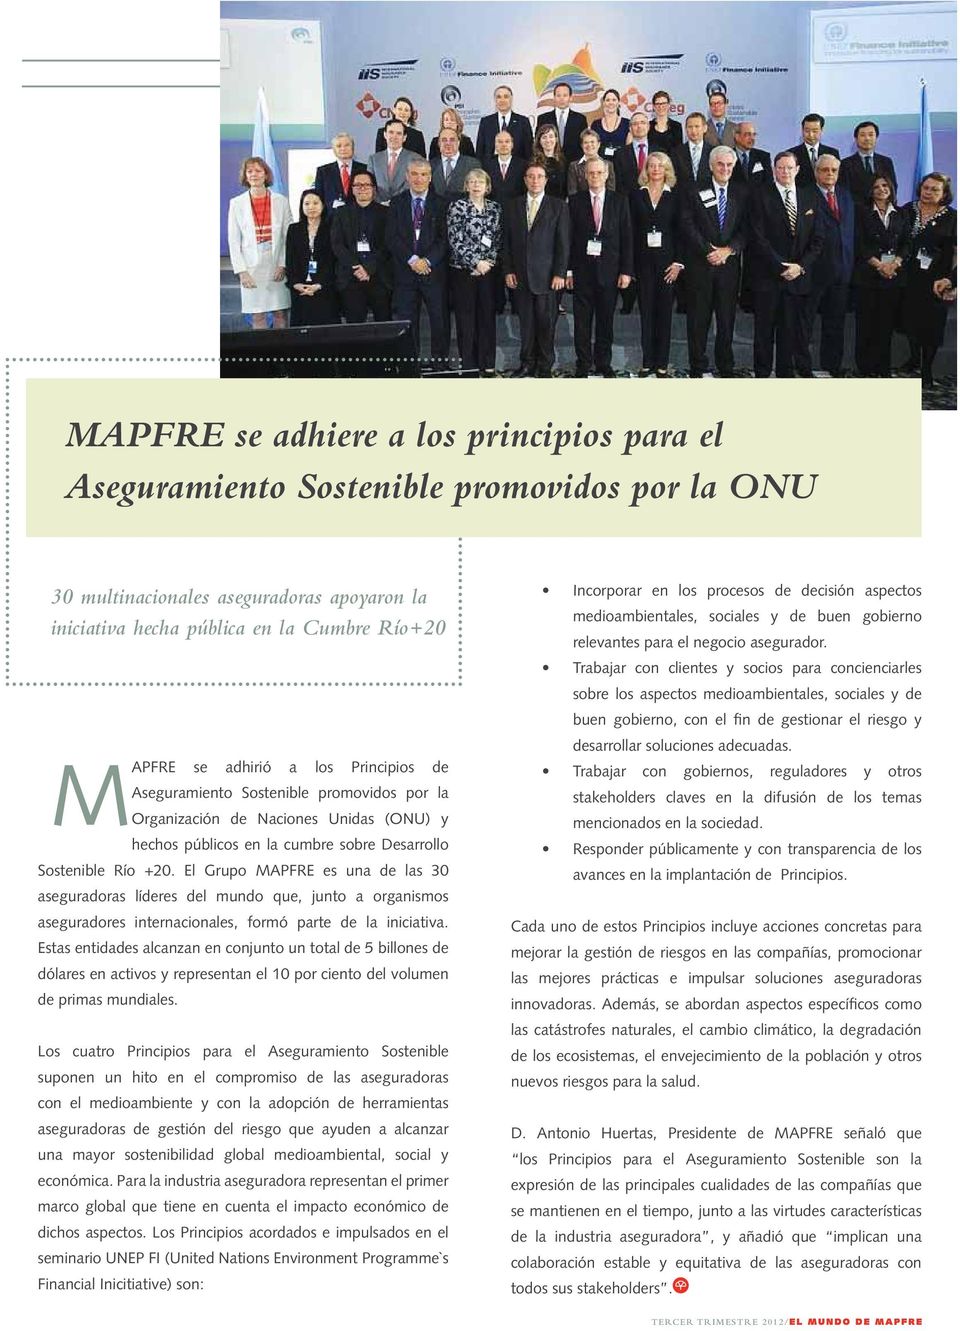 El Grupo MAPFRE es una de las 30 aseguradoras líderes del mundo que, junto a organismos aseguradores internacionales, formó parte de la iniciativa.